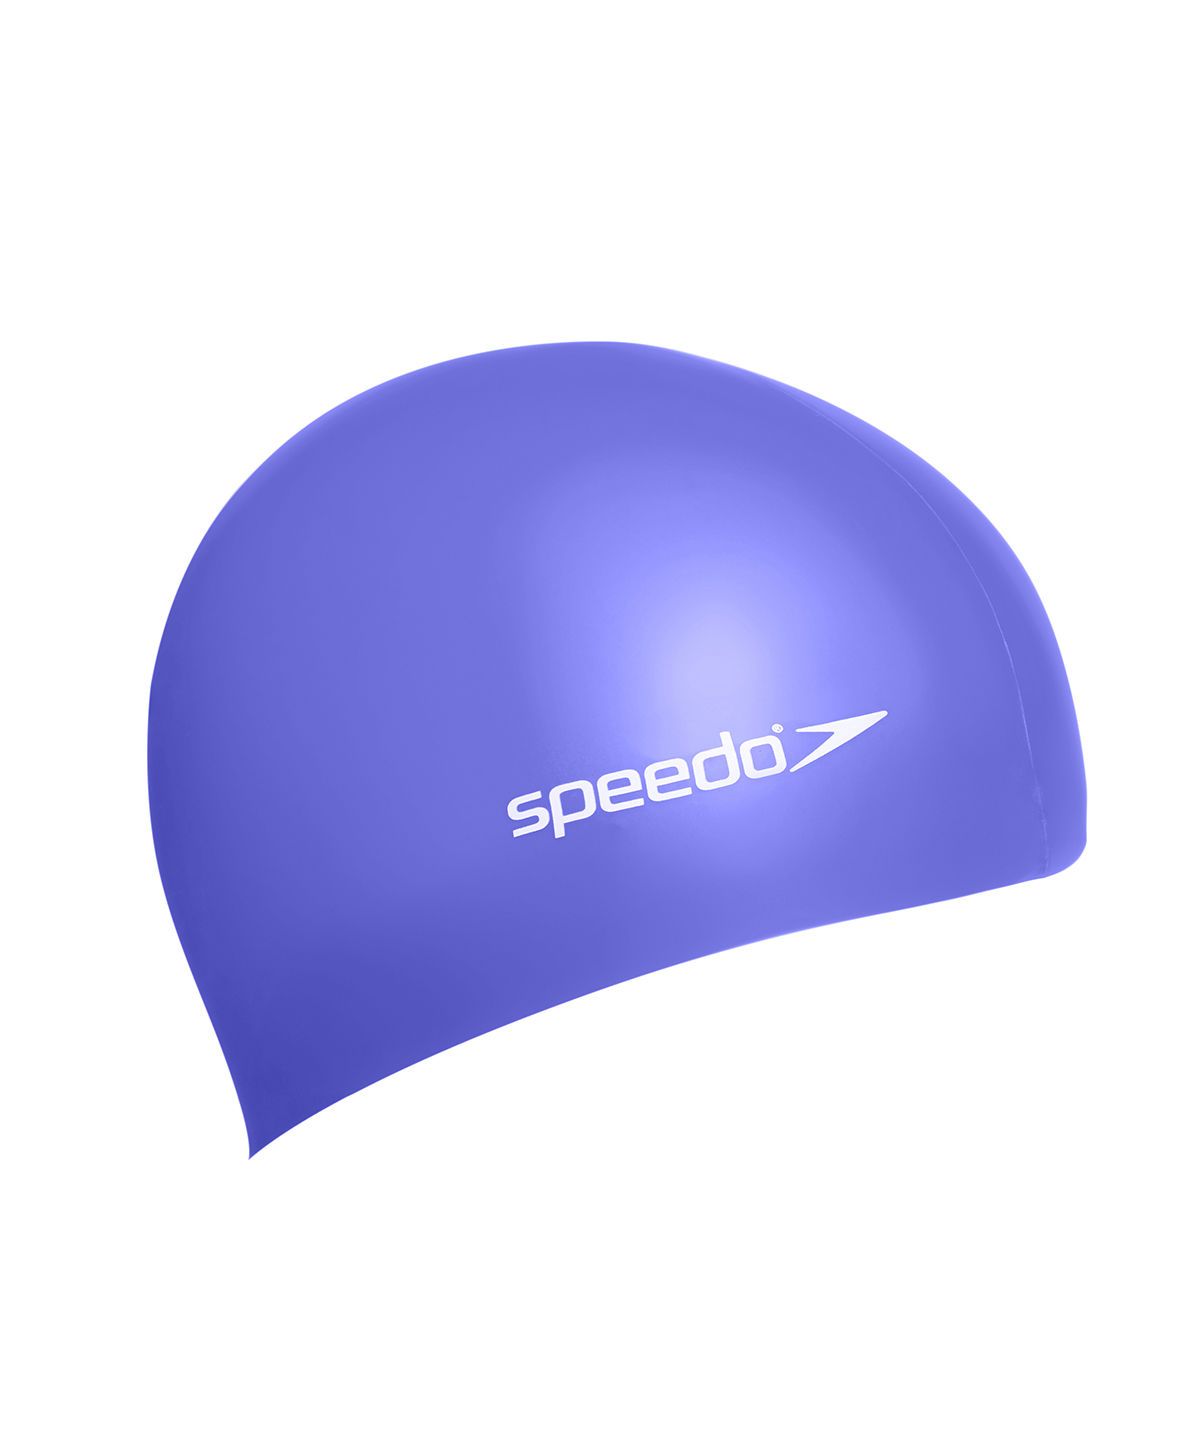  Speedo - Nón Bơi Người Lớn Plain Moulded Silicone (Purple) Chống Thấm Nước 